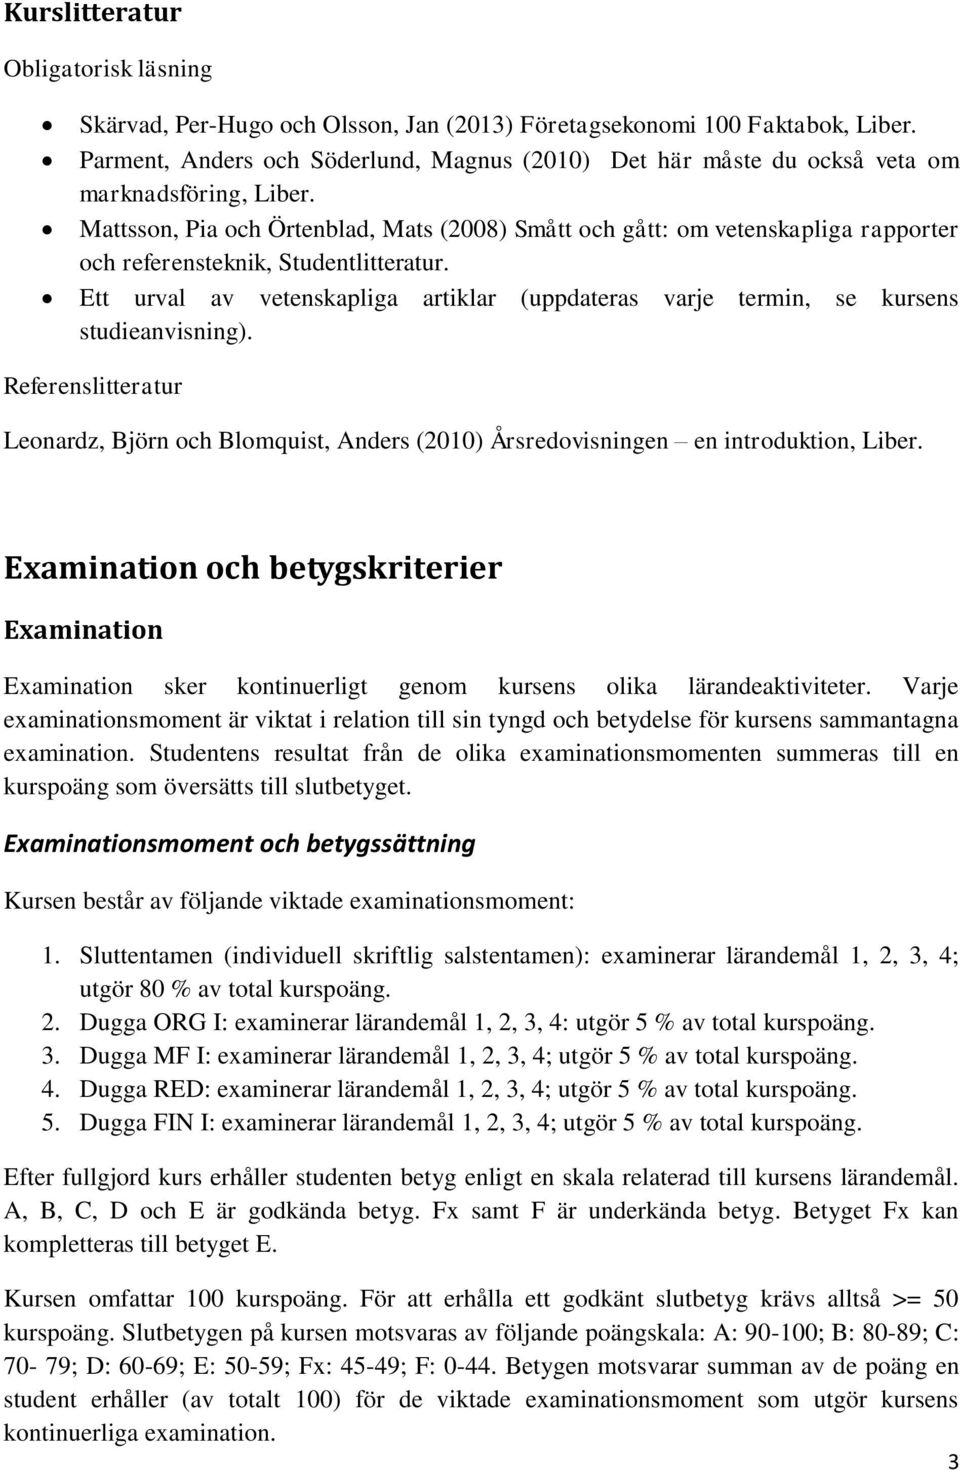 Mattsson, Pia och Örtenblad, Mats (2008) Smått och gått: om vetenskapliga rapporter och referensteknik, Studentlitteratur.